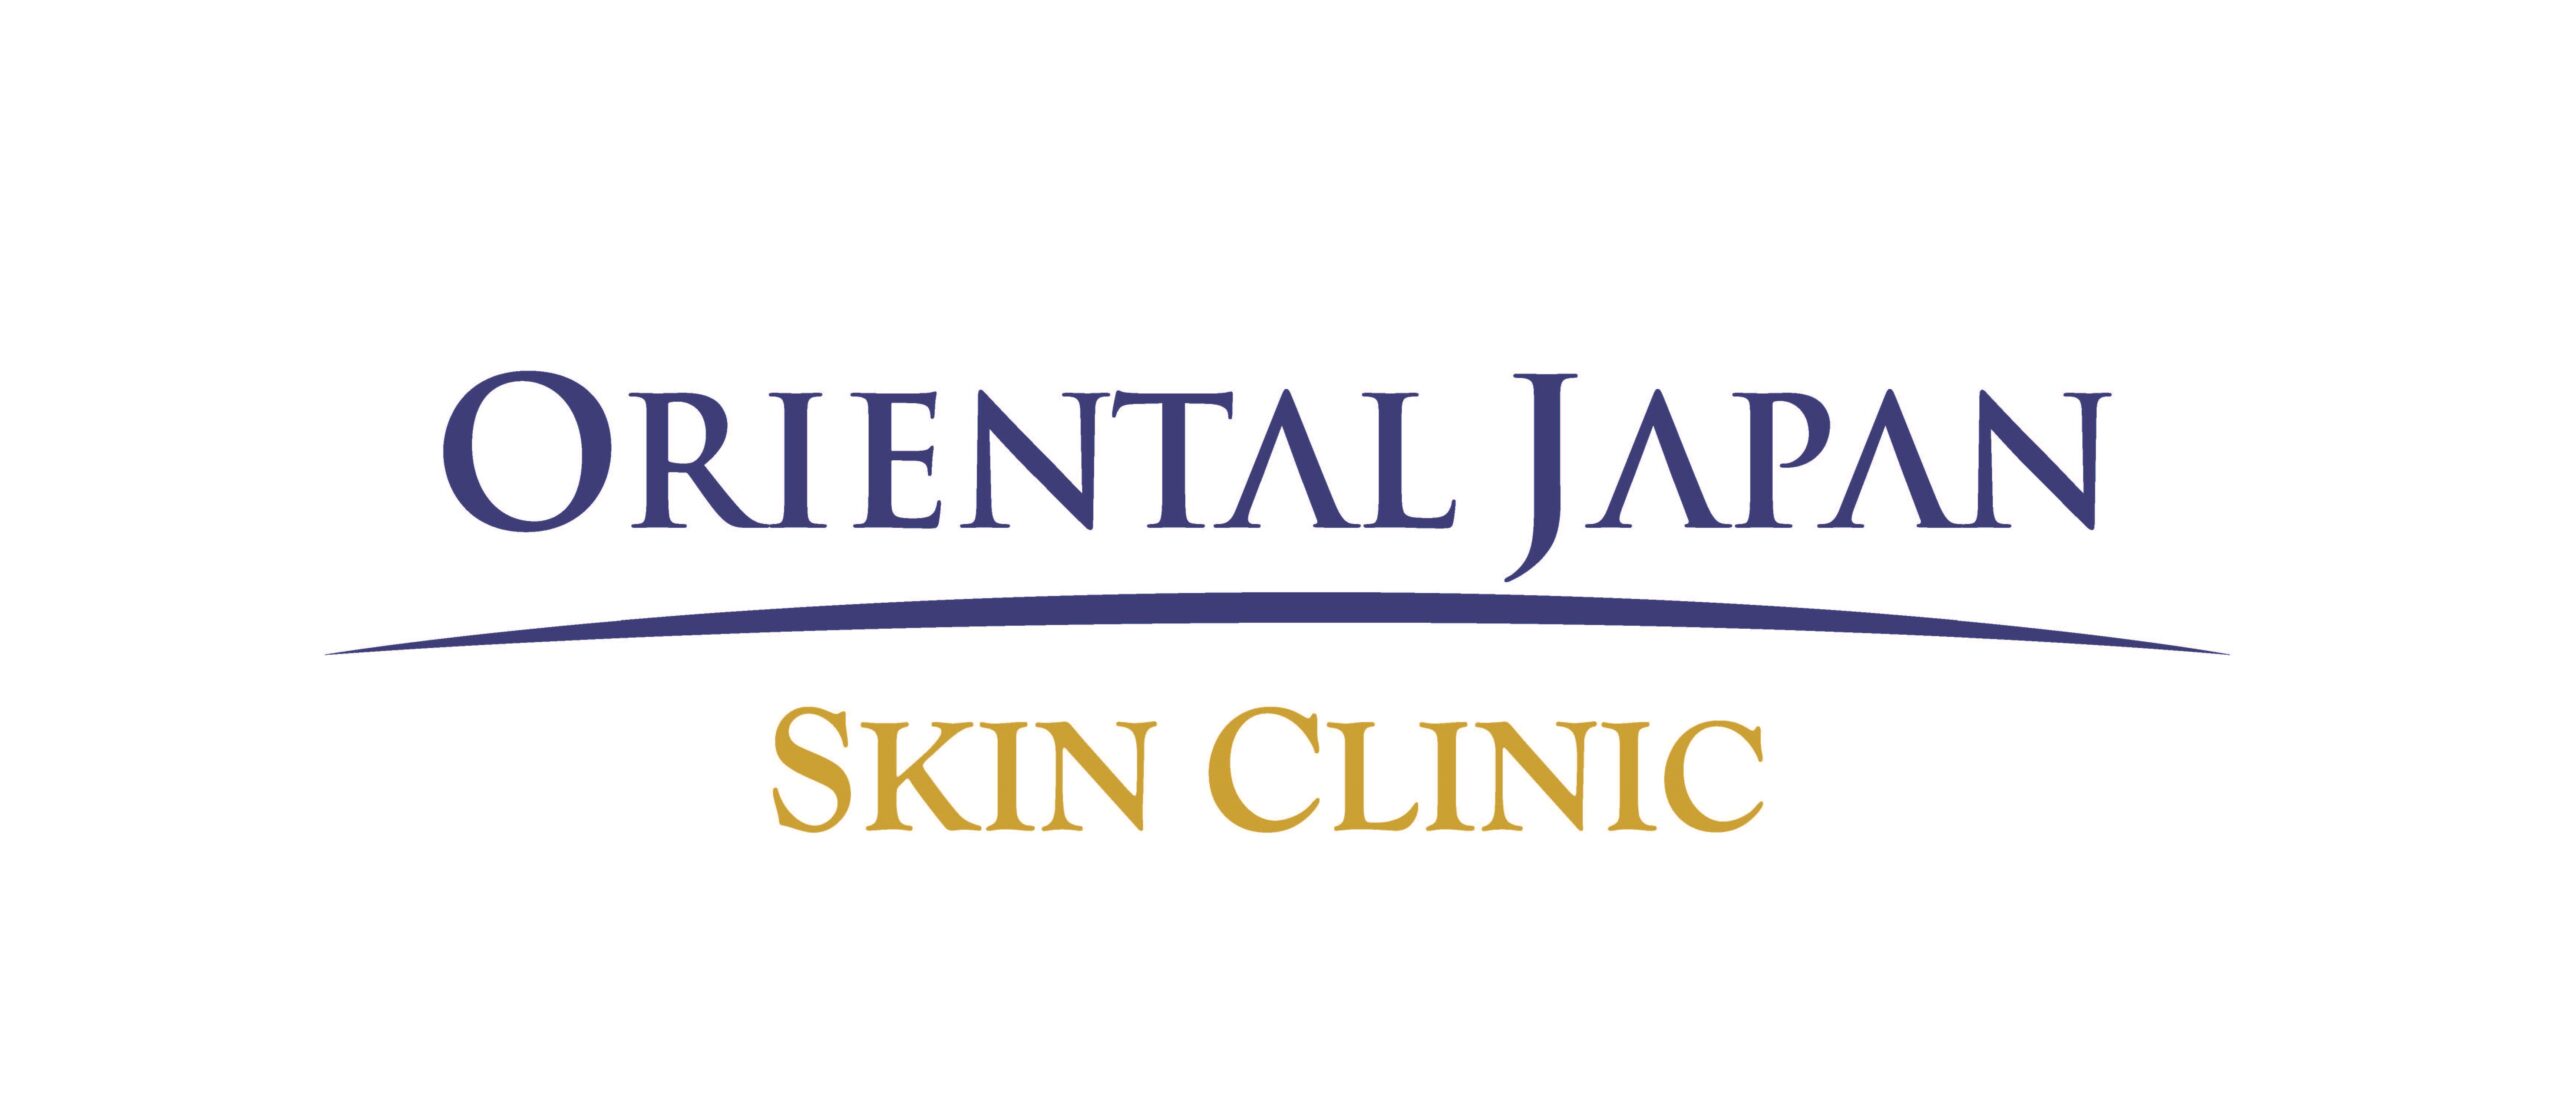 Oriental Japan Skin Clinic